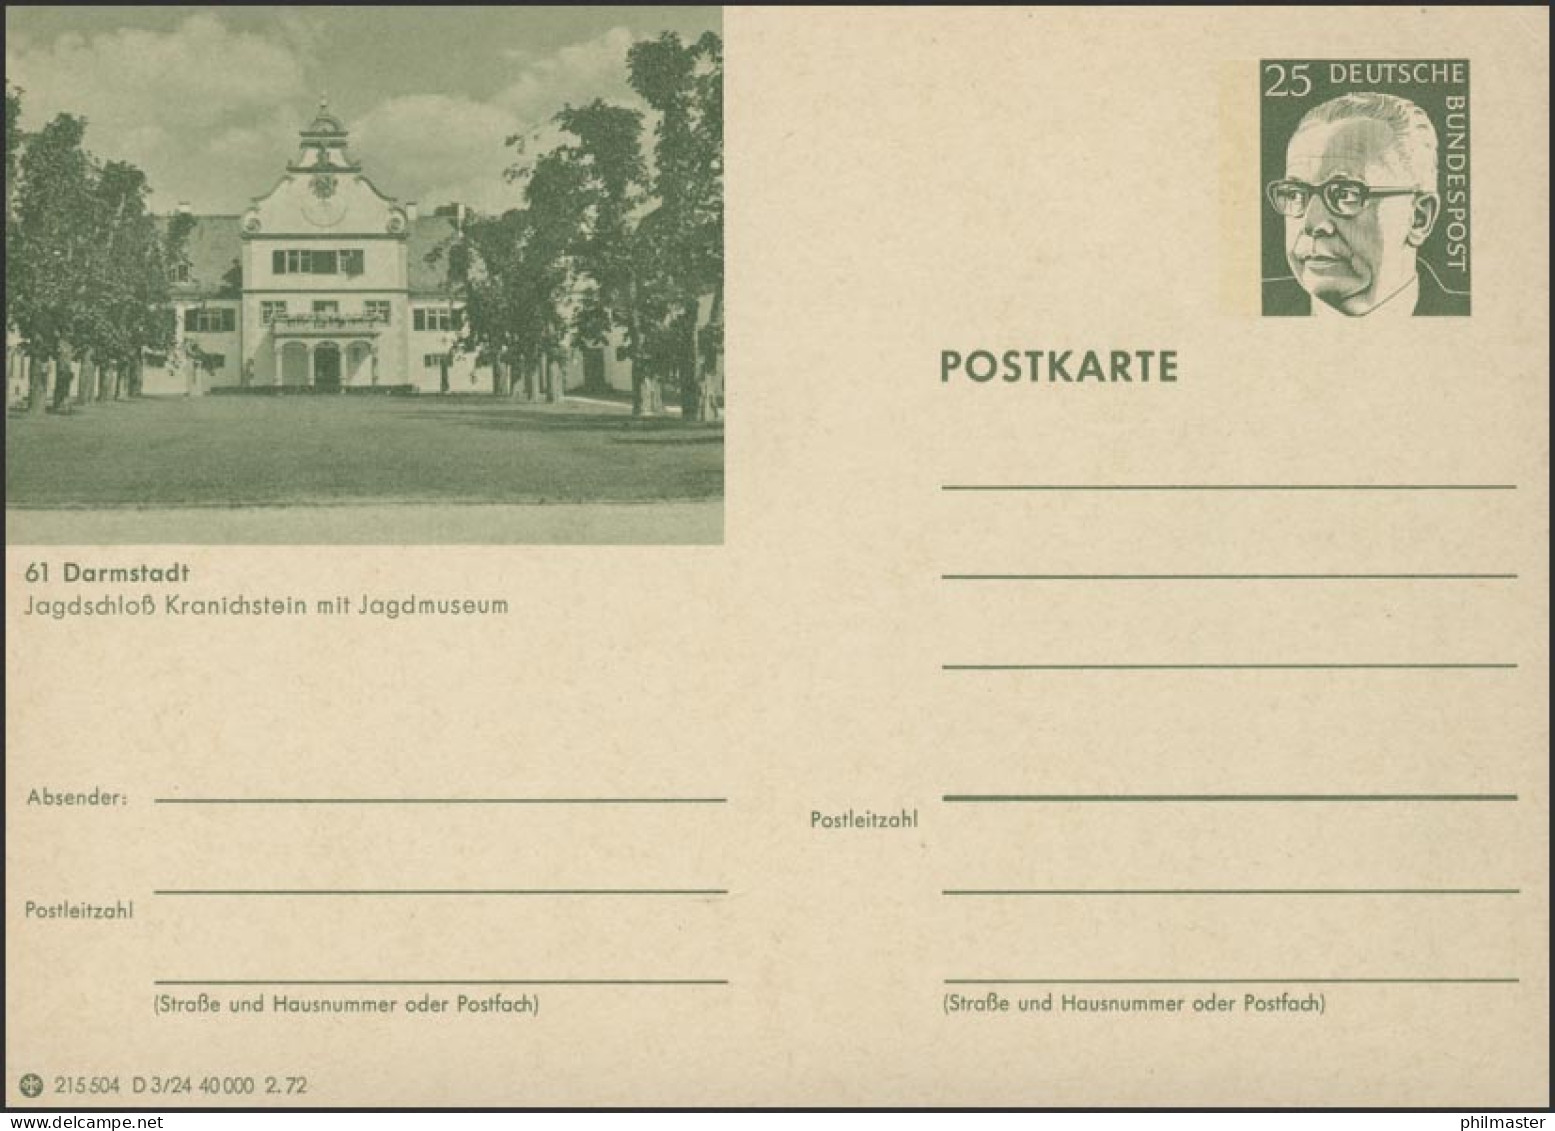 P107-D03/024 61 Darmstadt, Jagdschloß Kranichstein** - Postales Ilustrados - Nuevos